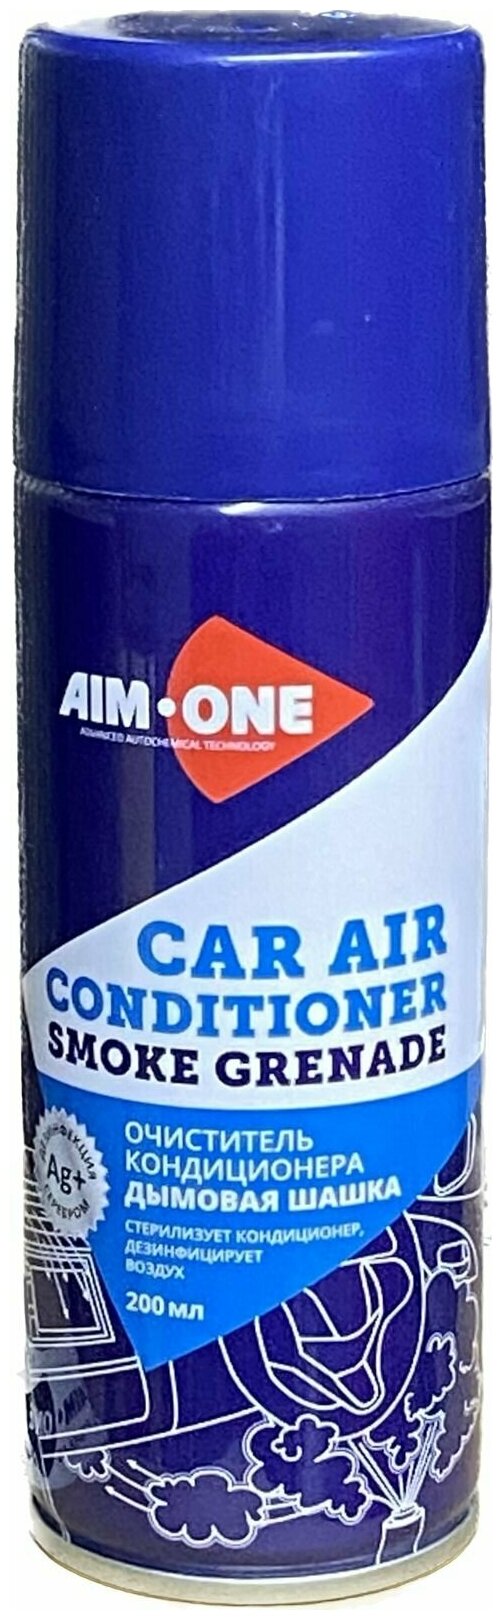 Очиститель кондиционера дымовая шашка Car air conditioner smoke grenadeAIM-ONE 200мл (аэрозоль)